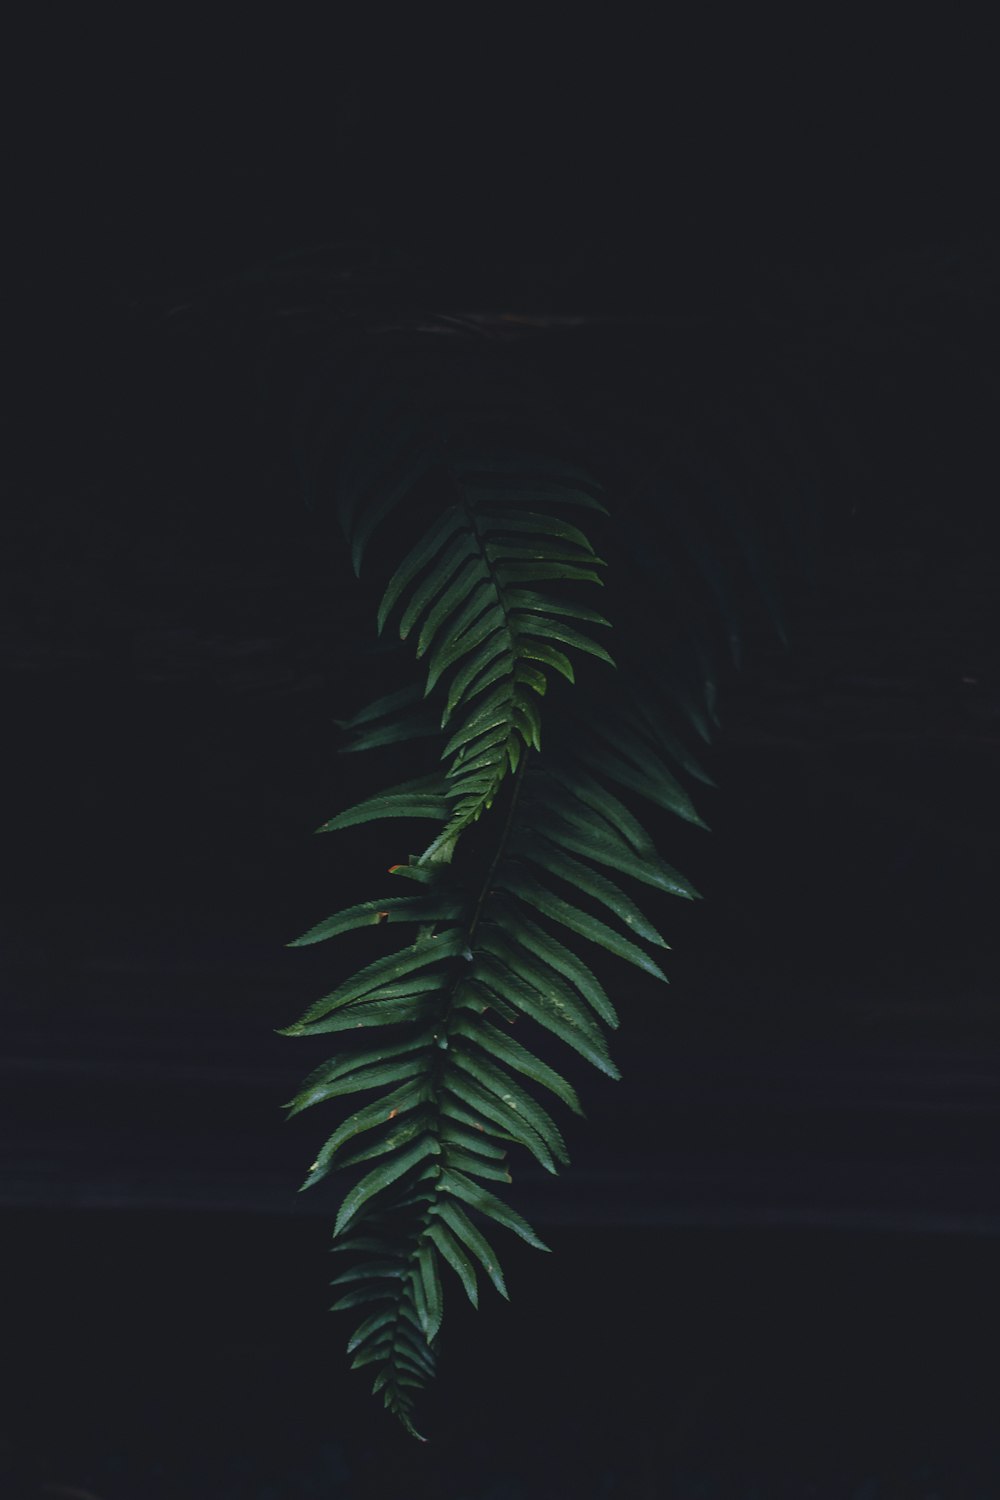 a green fern leaf on a dark background